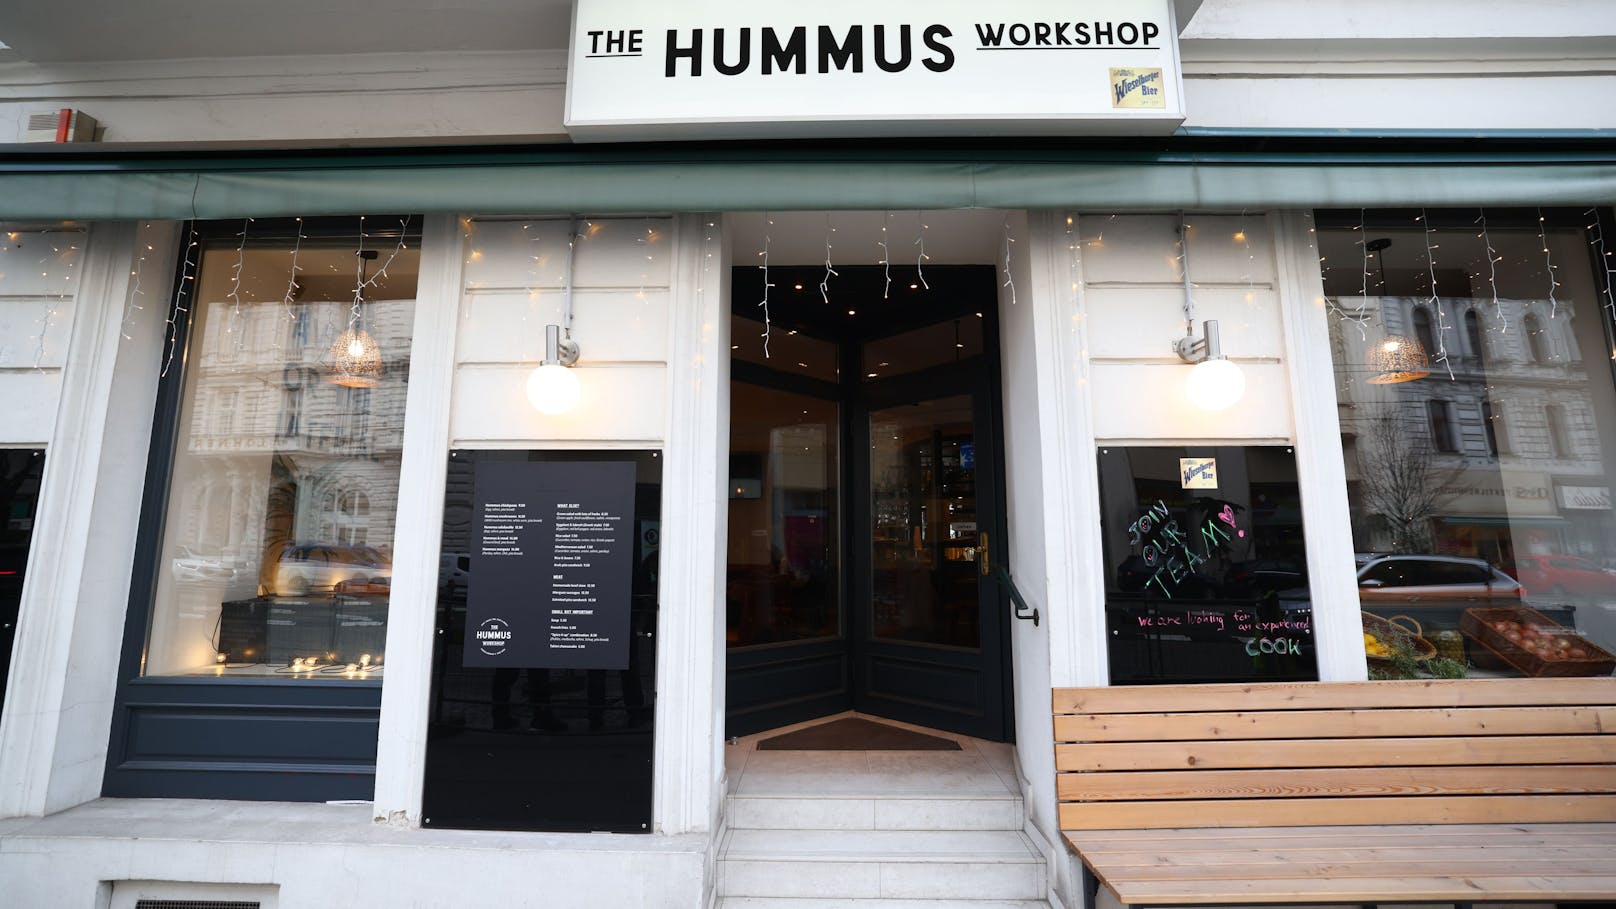 Das Lokal "The Hummus Workshop" befindet sich in der Porzellangasse (Alsergrund).